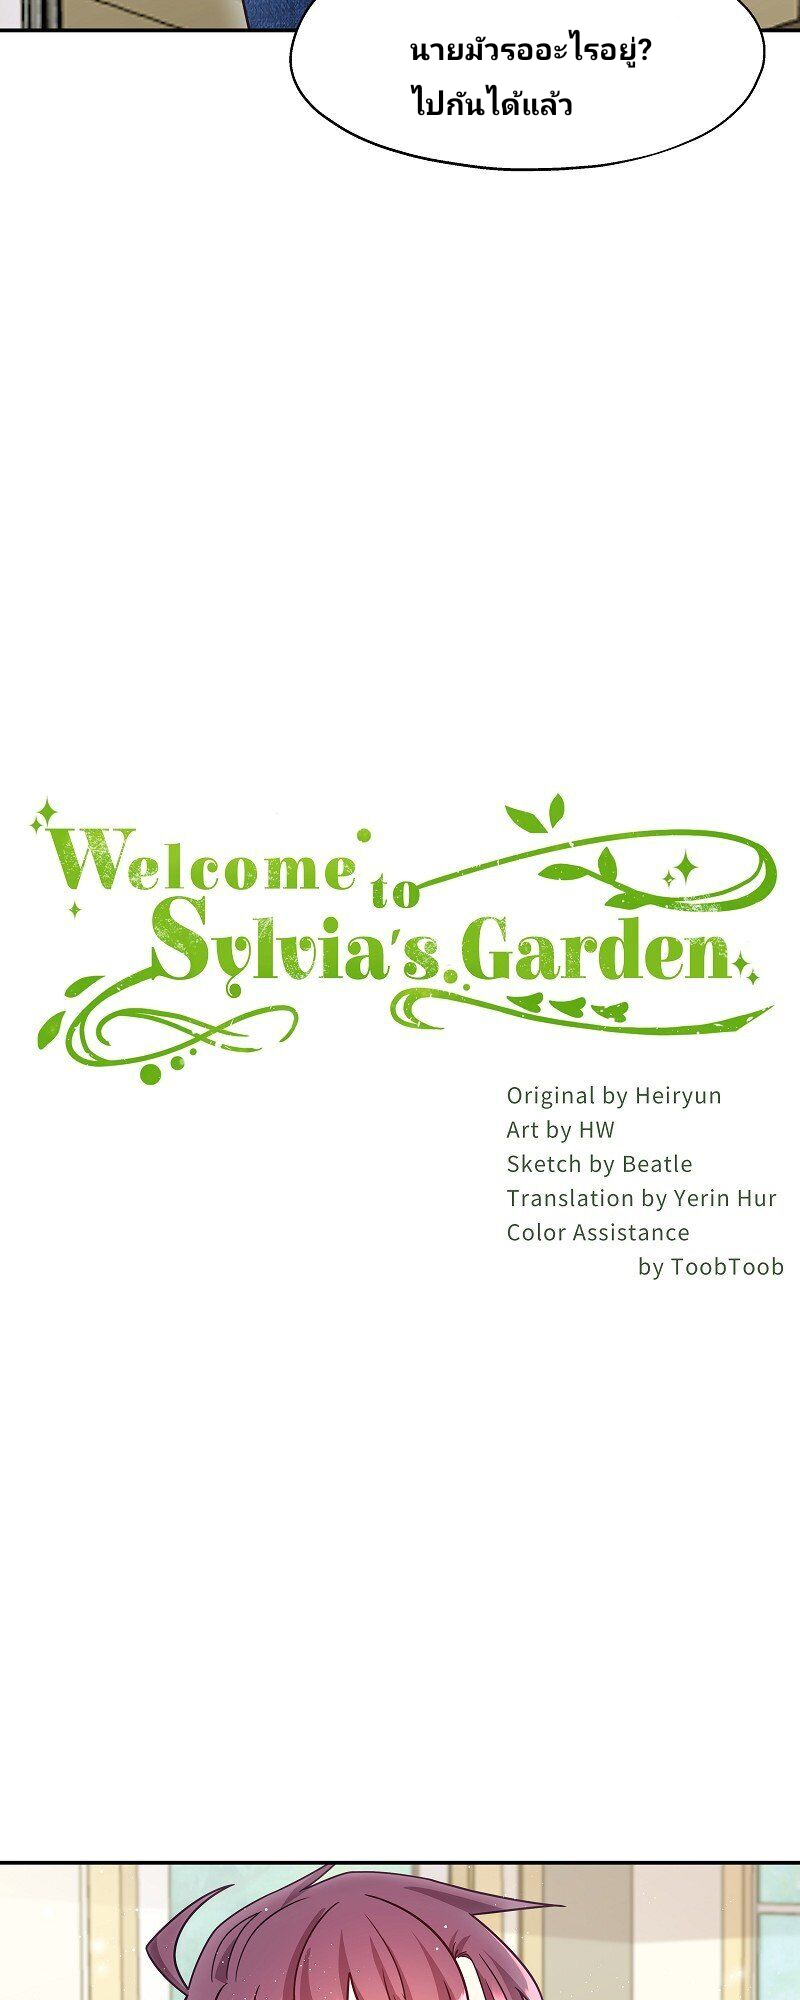 Welcome to Sylvia’s Garden 8 (2)